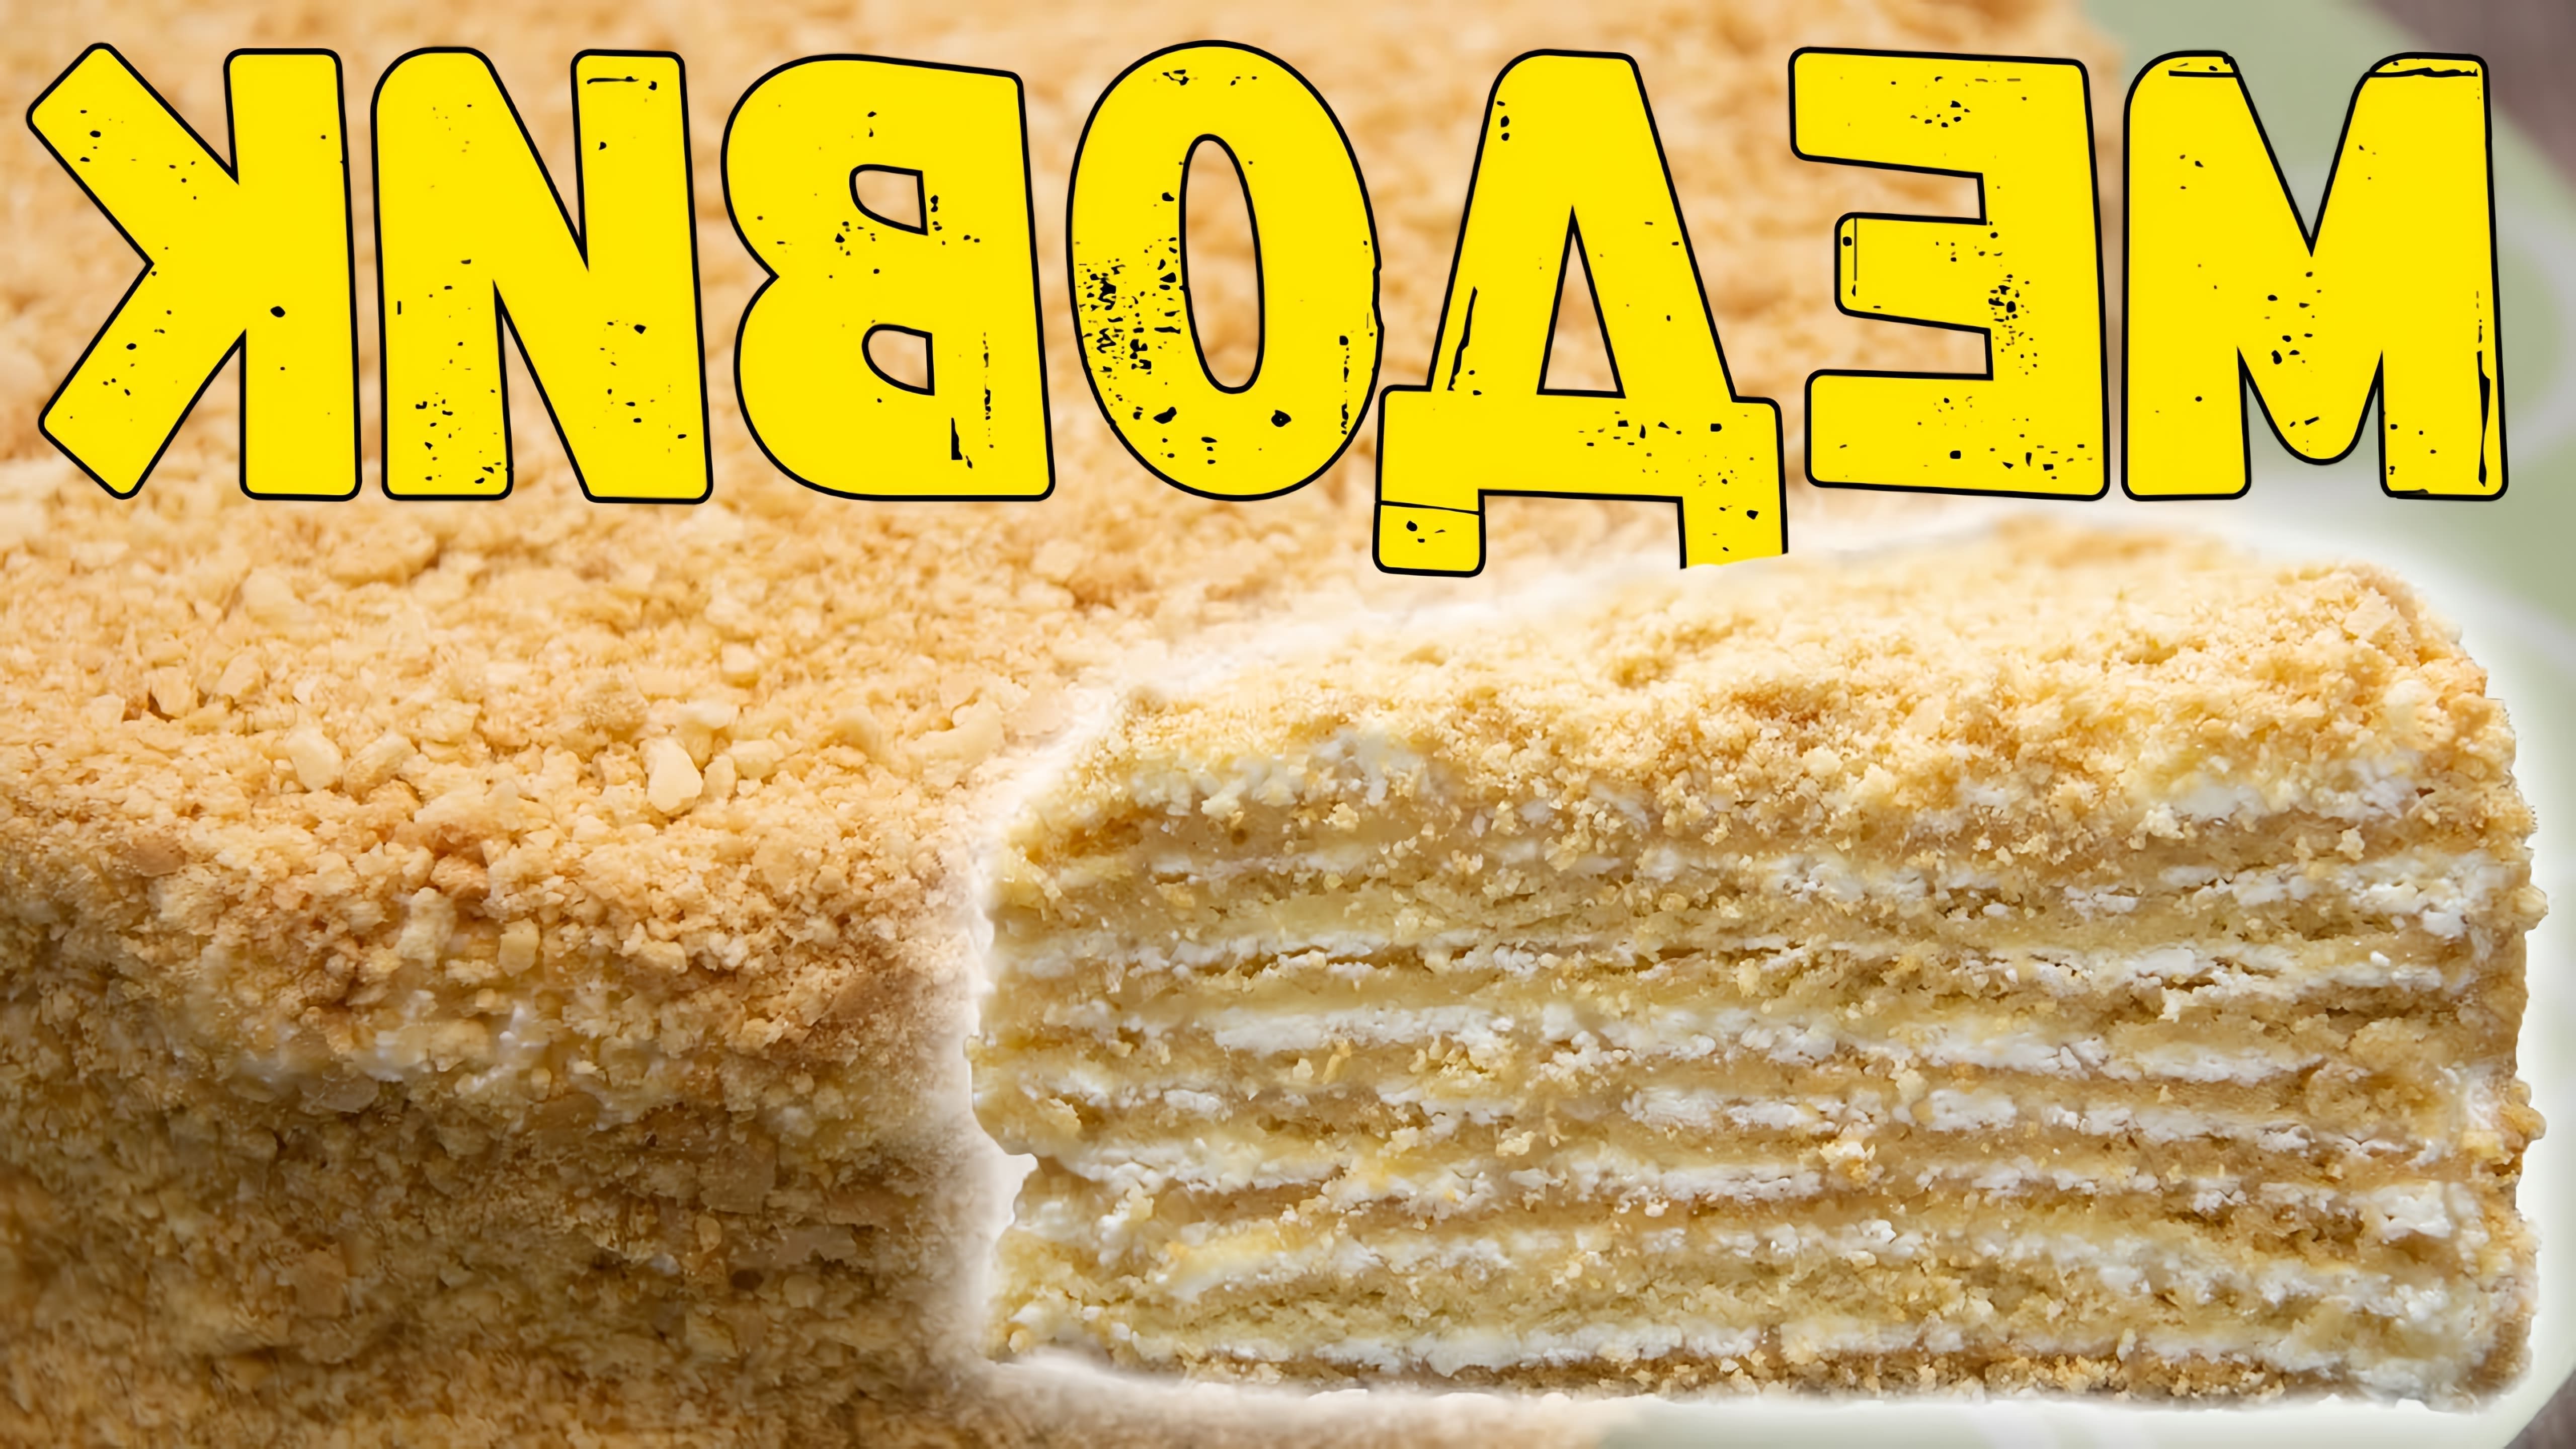 В этом видео представлен рецепт торта "Винни-пух", который готовится из медового теста и крема на манной каше